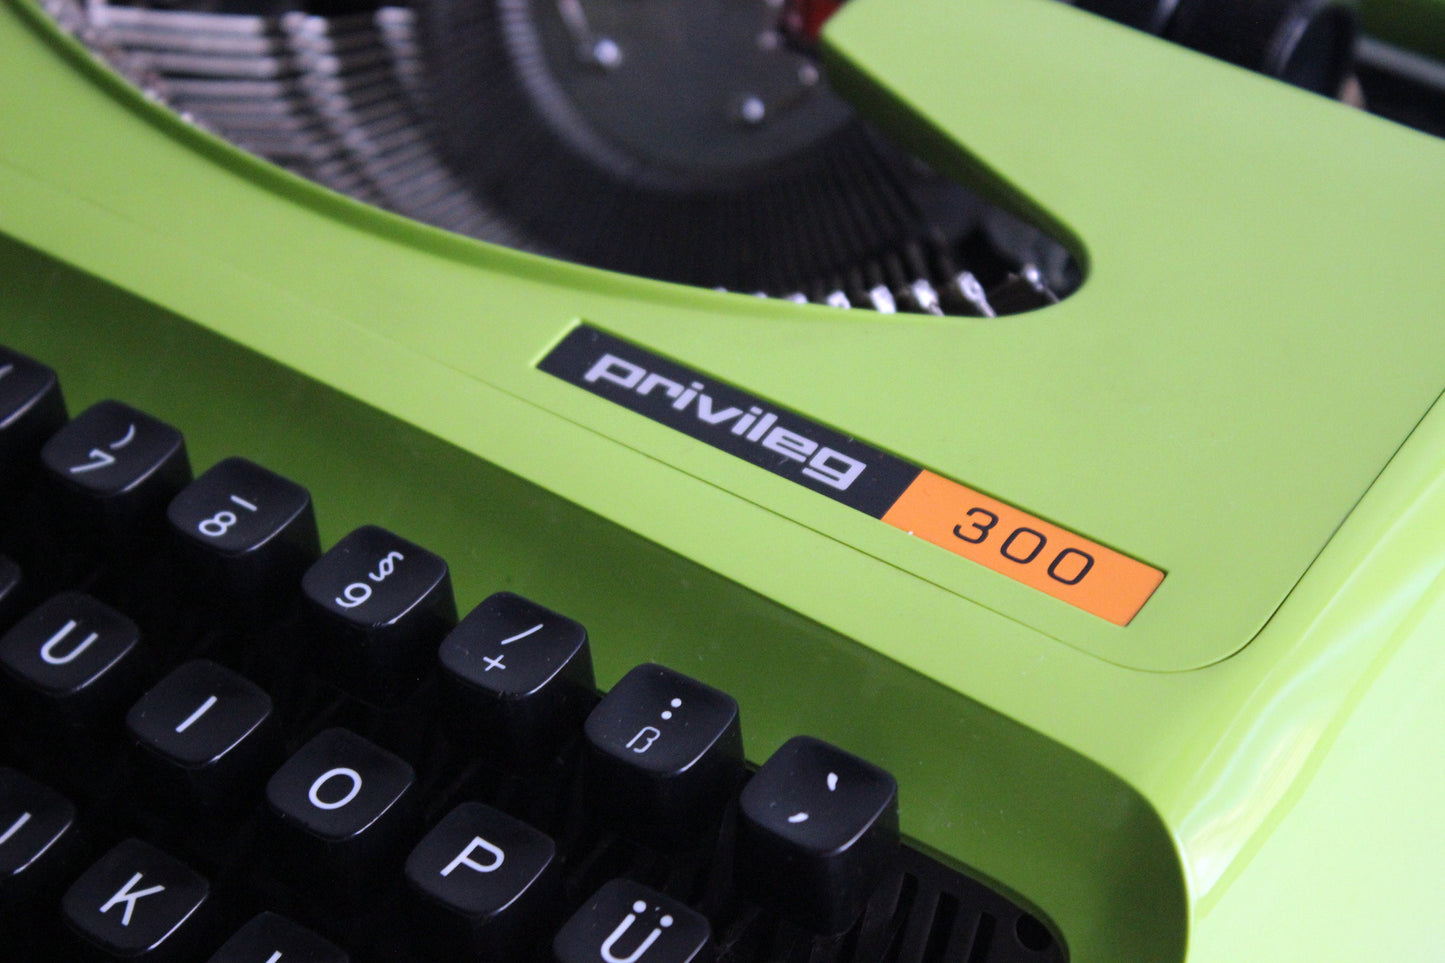 Privileg typewriter model 300 green